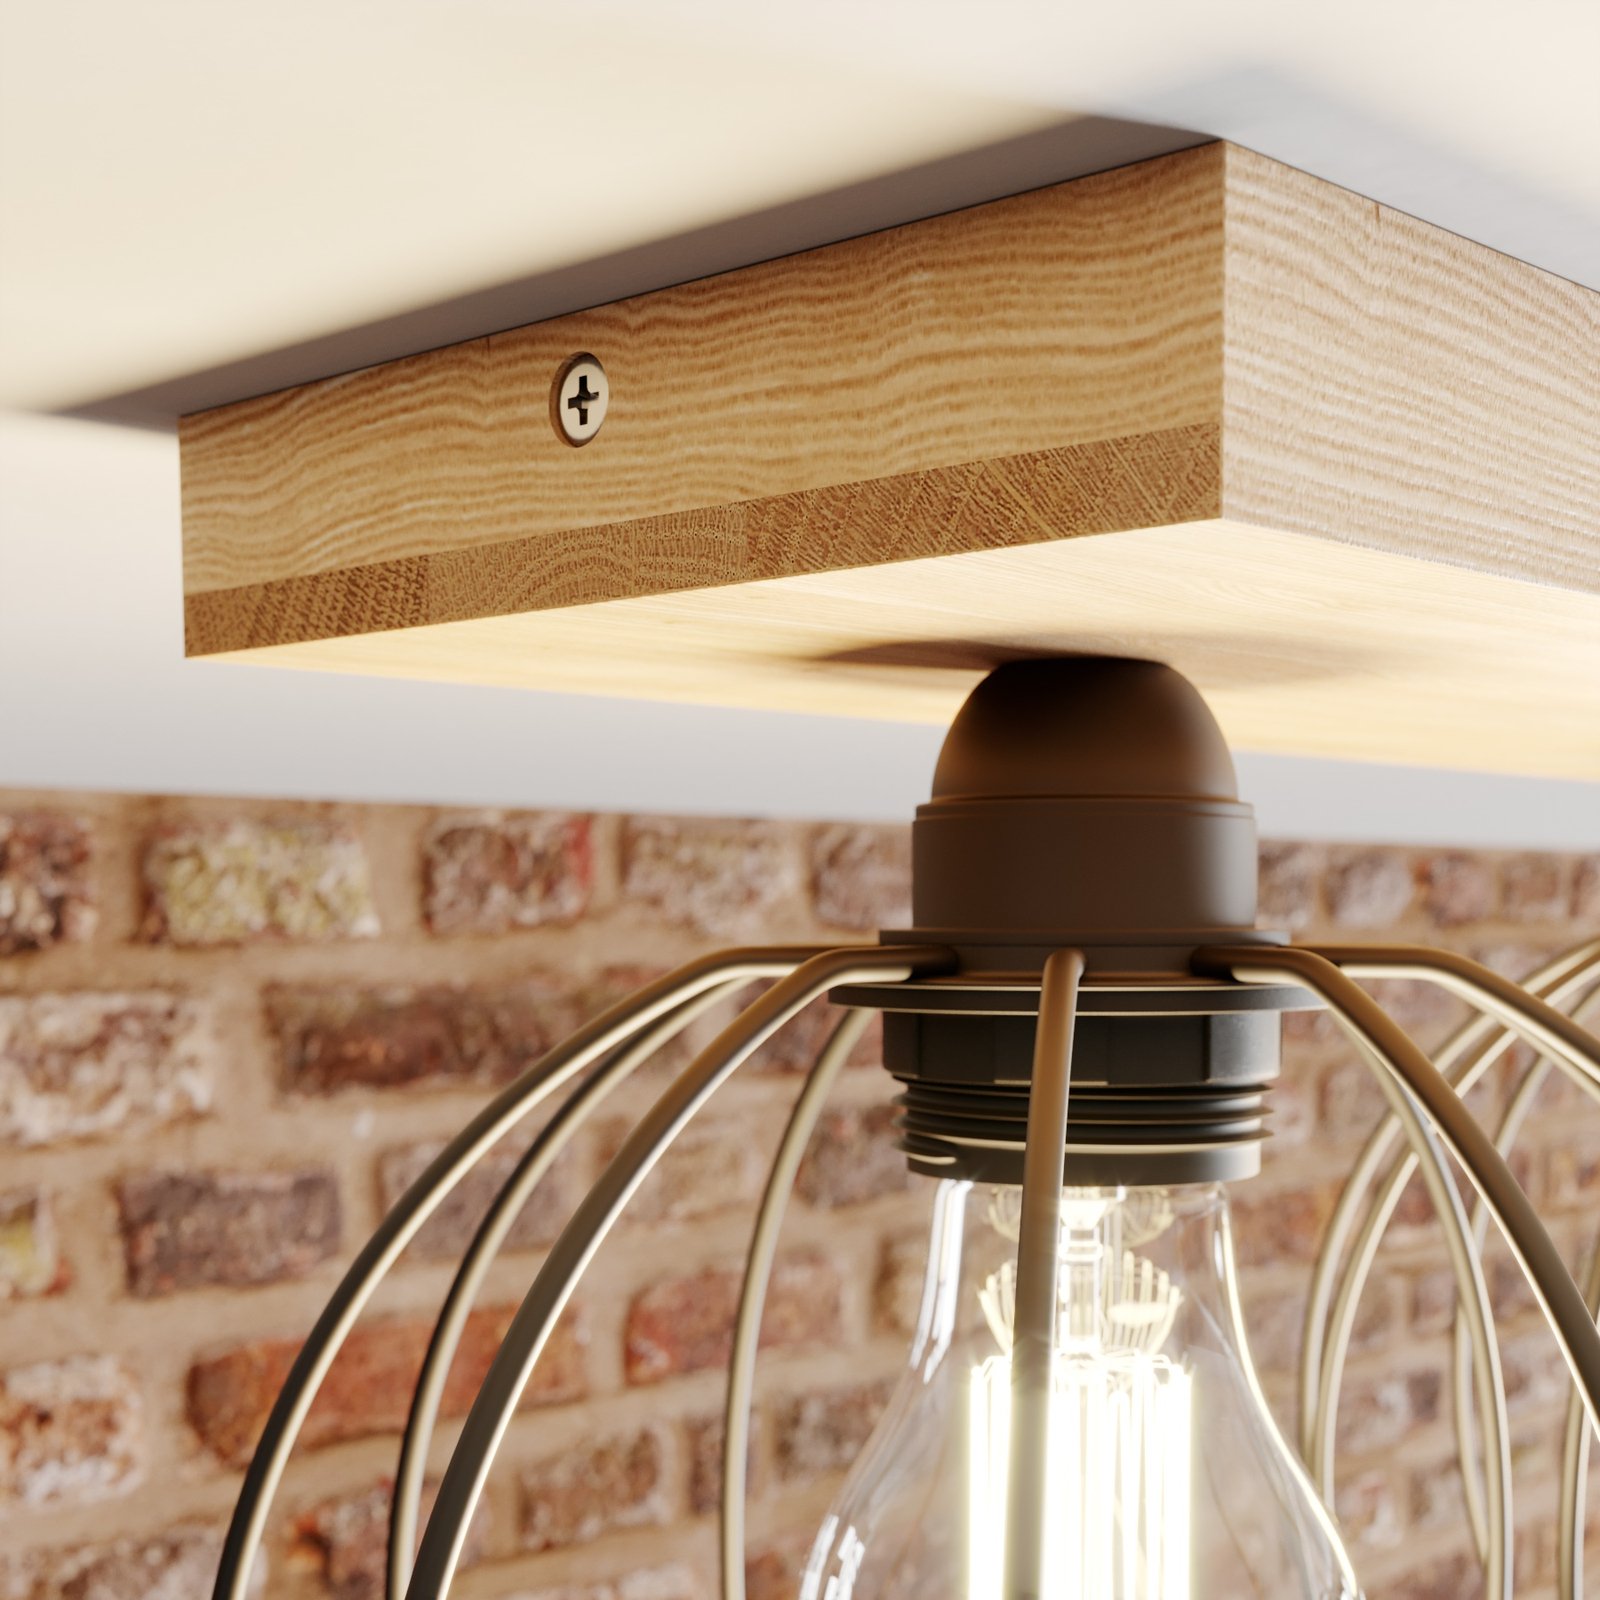 Dorett ceiling light, oak wood, 2-bulb